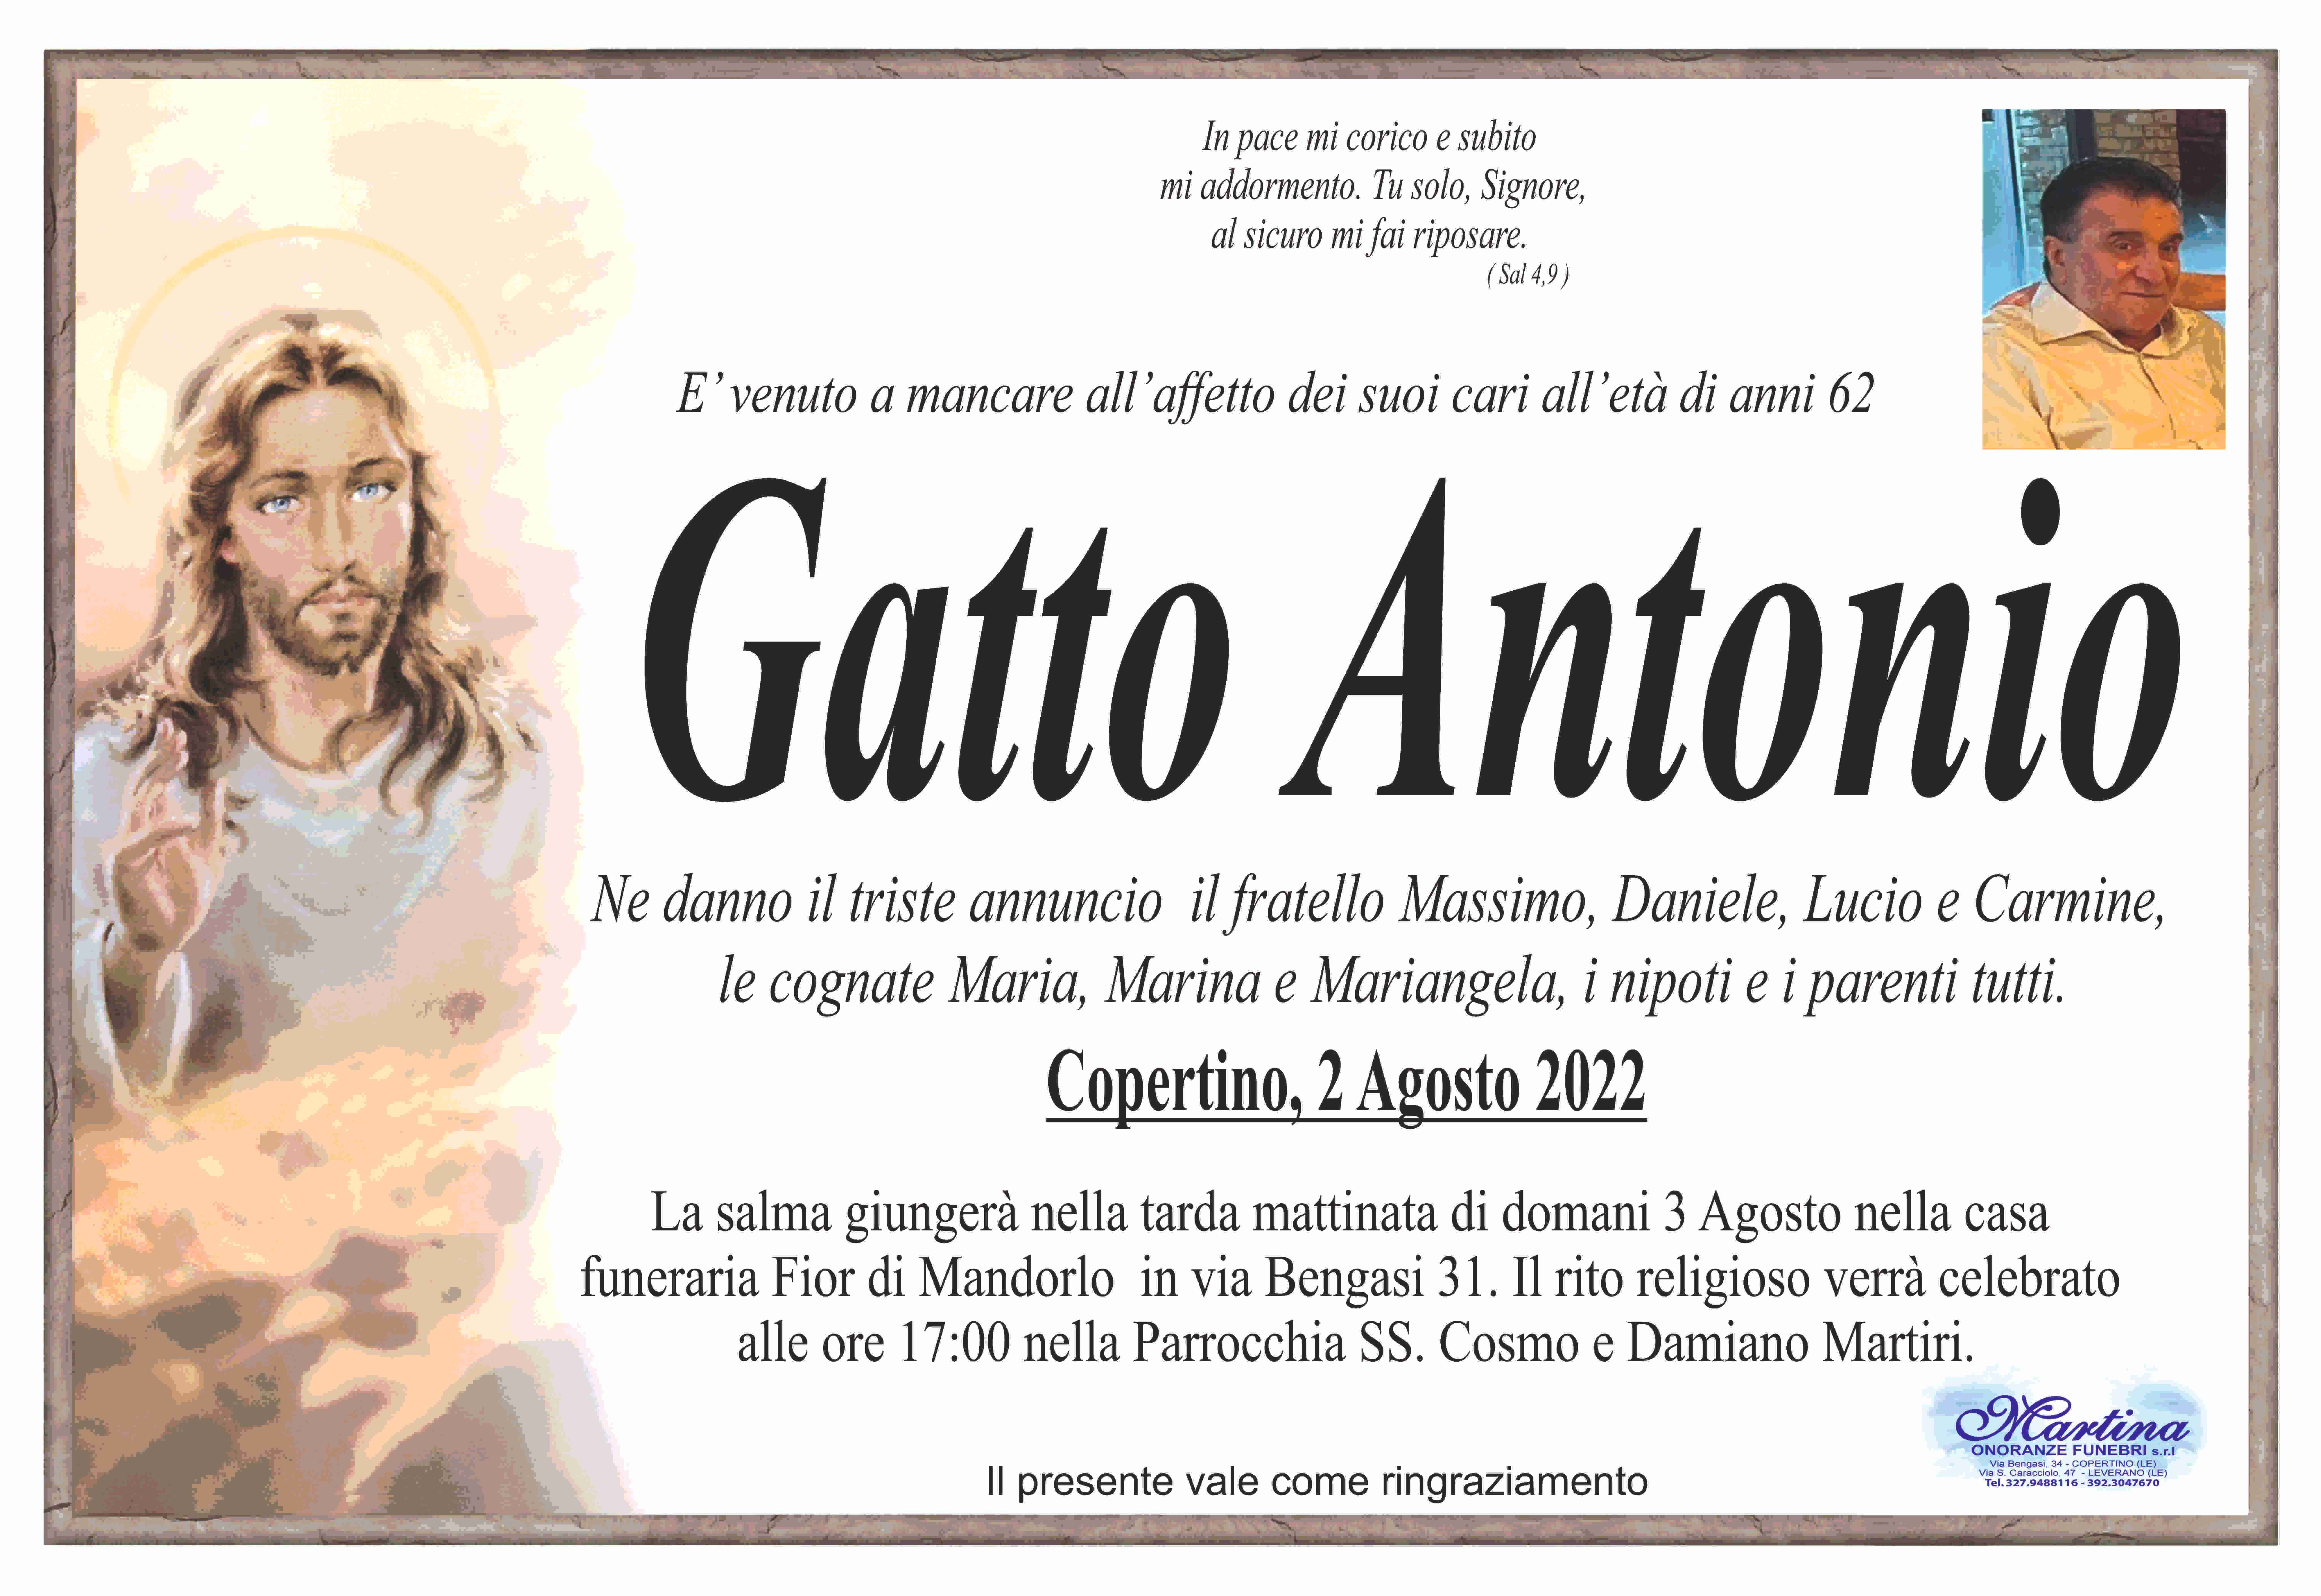 Antonio Gatto